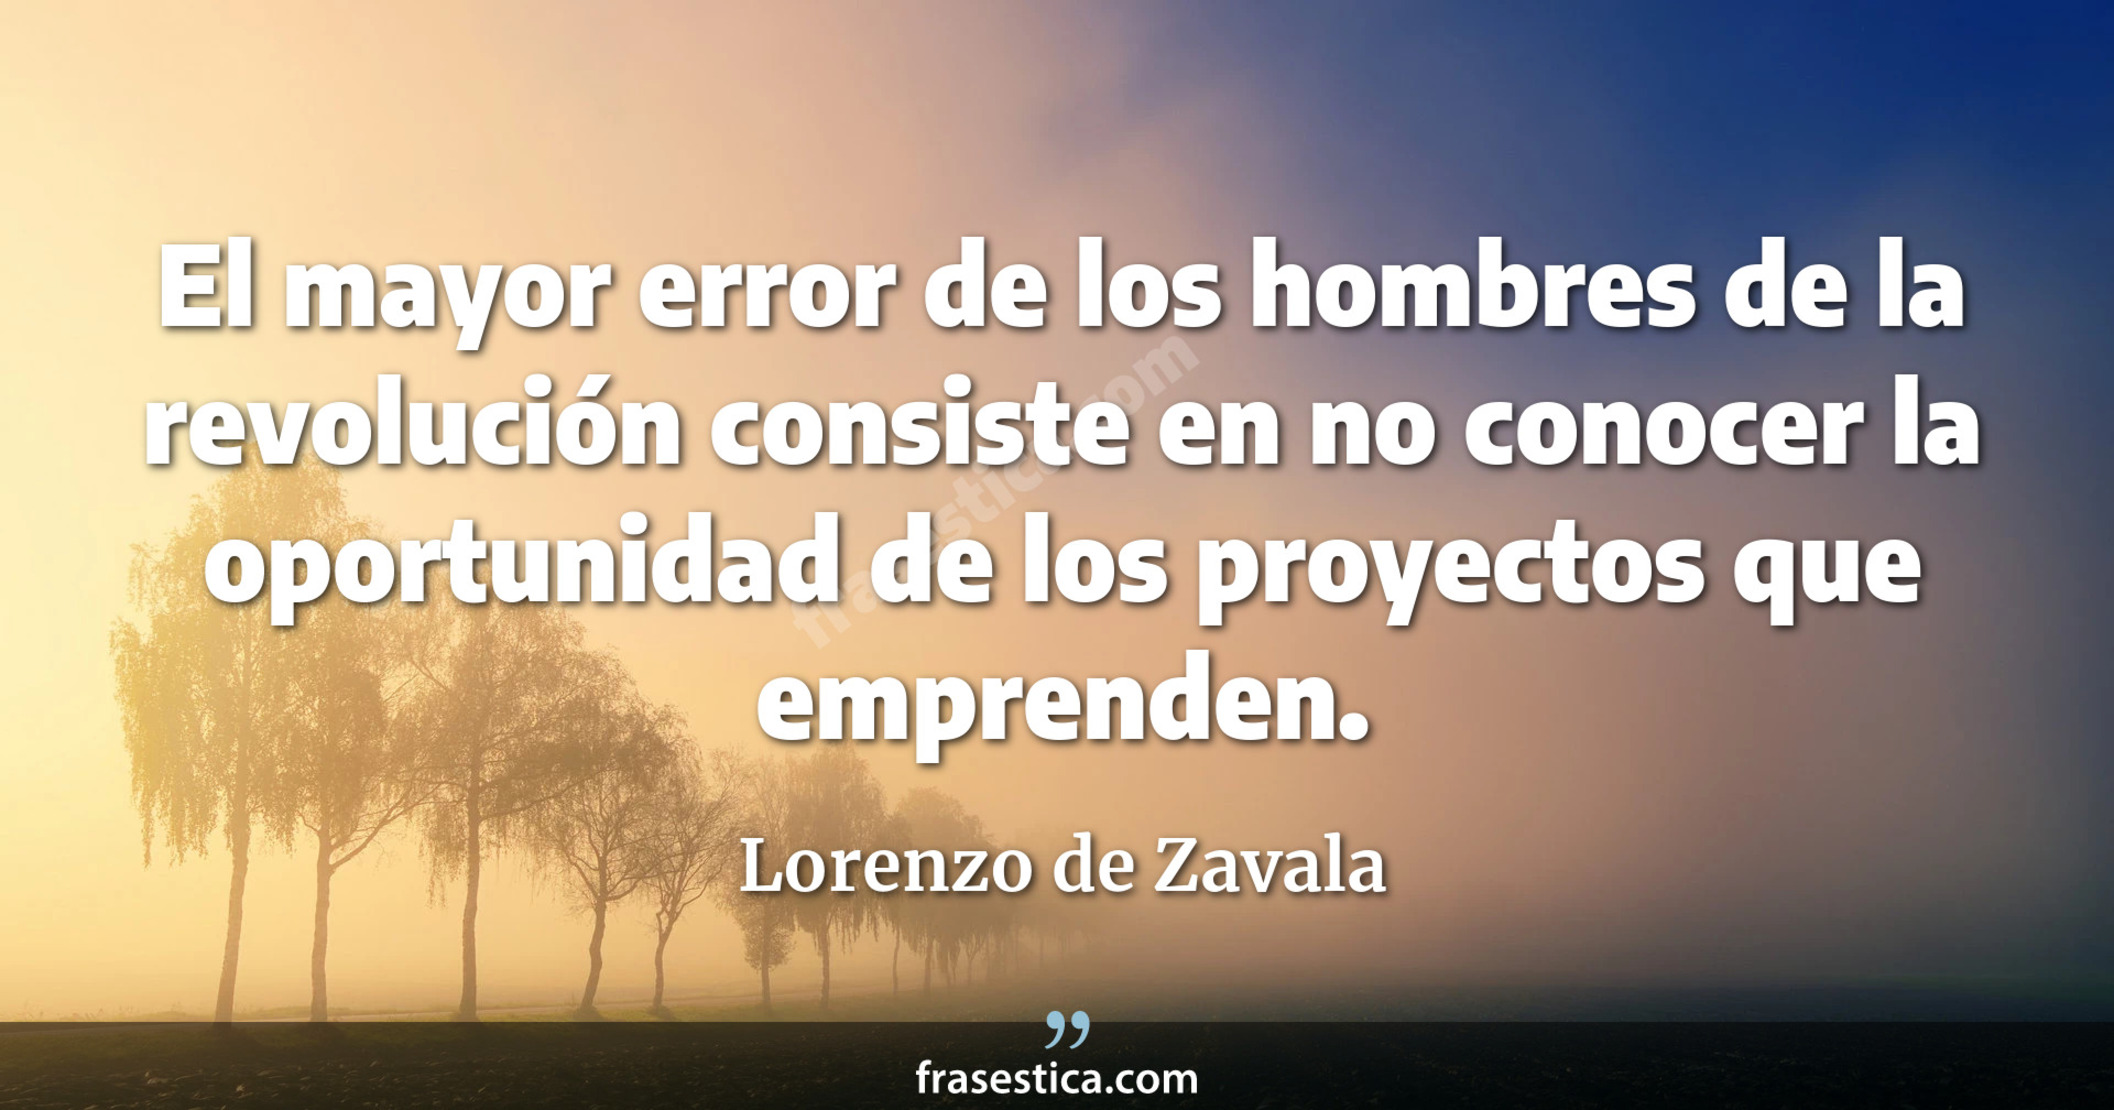 El mayor error de los hombres de la revolución consiste en no conocer la oportunidad de los proyectos que emprenden. - Lorenzo de Zavala